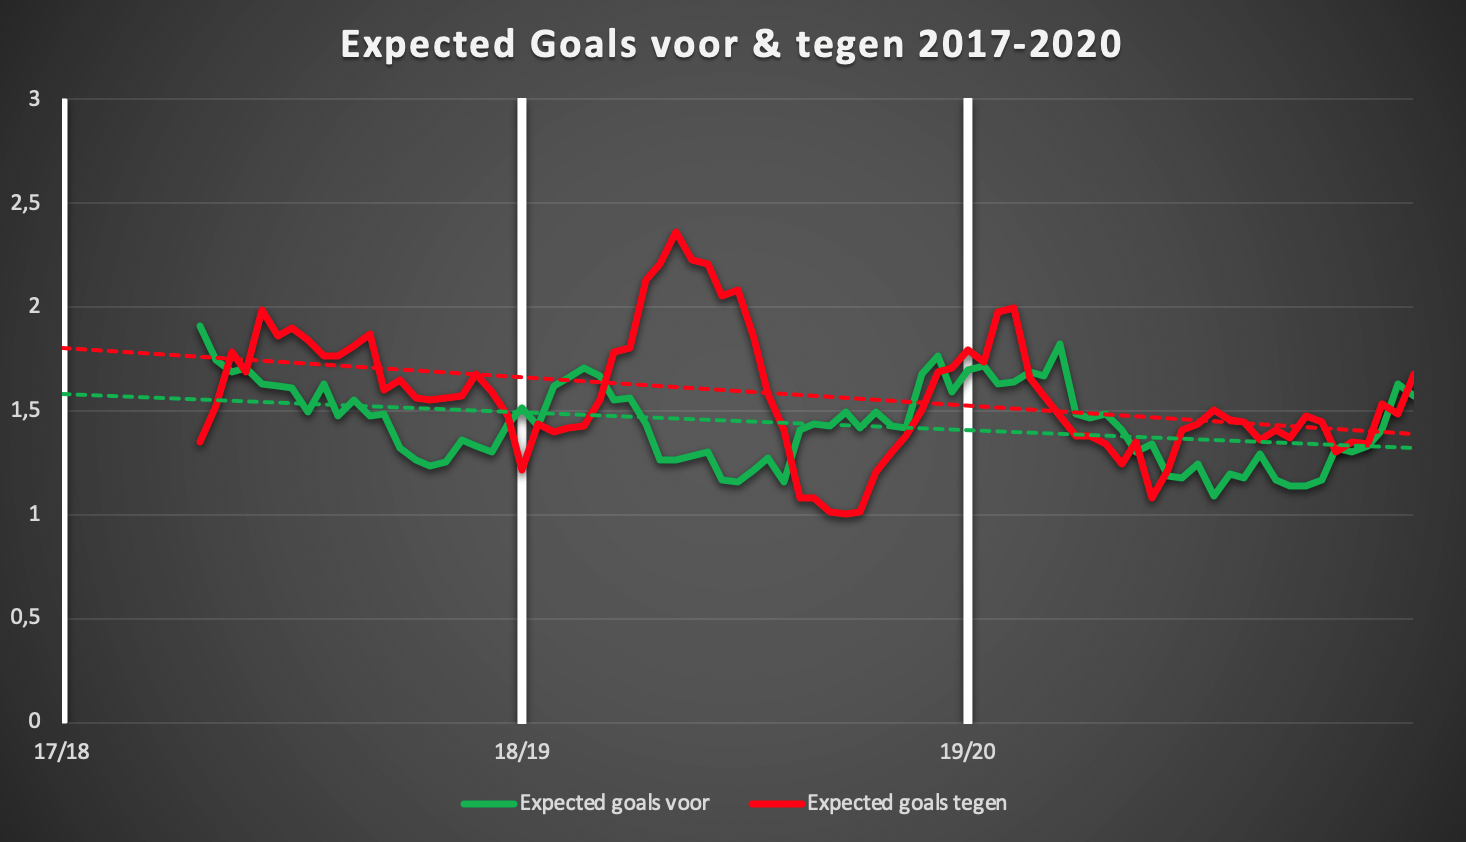 Rollend gemiddelde (10 wedstrijden) van de gecreëerde kansen voor en tegen van Zulte Waregem de afgelopen 3 seizoenen in de reguliere competitie (dus geen play-offs)., Redactie